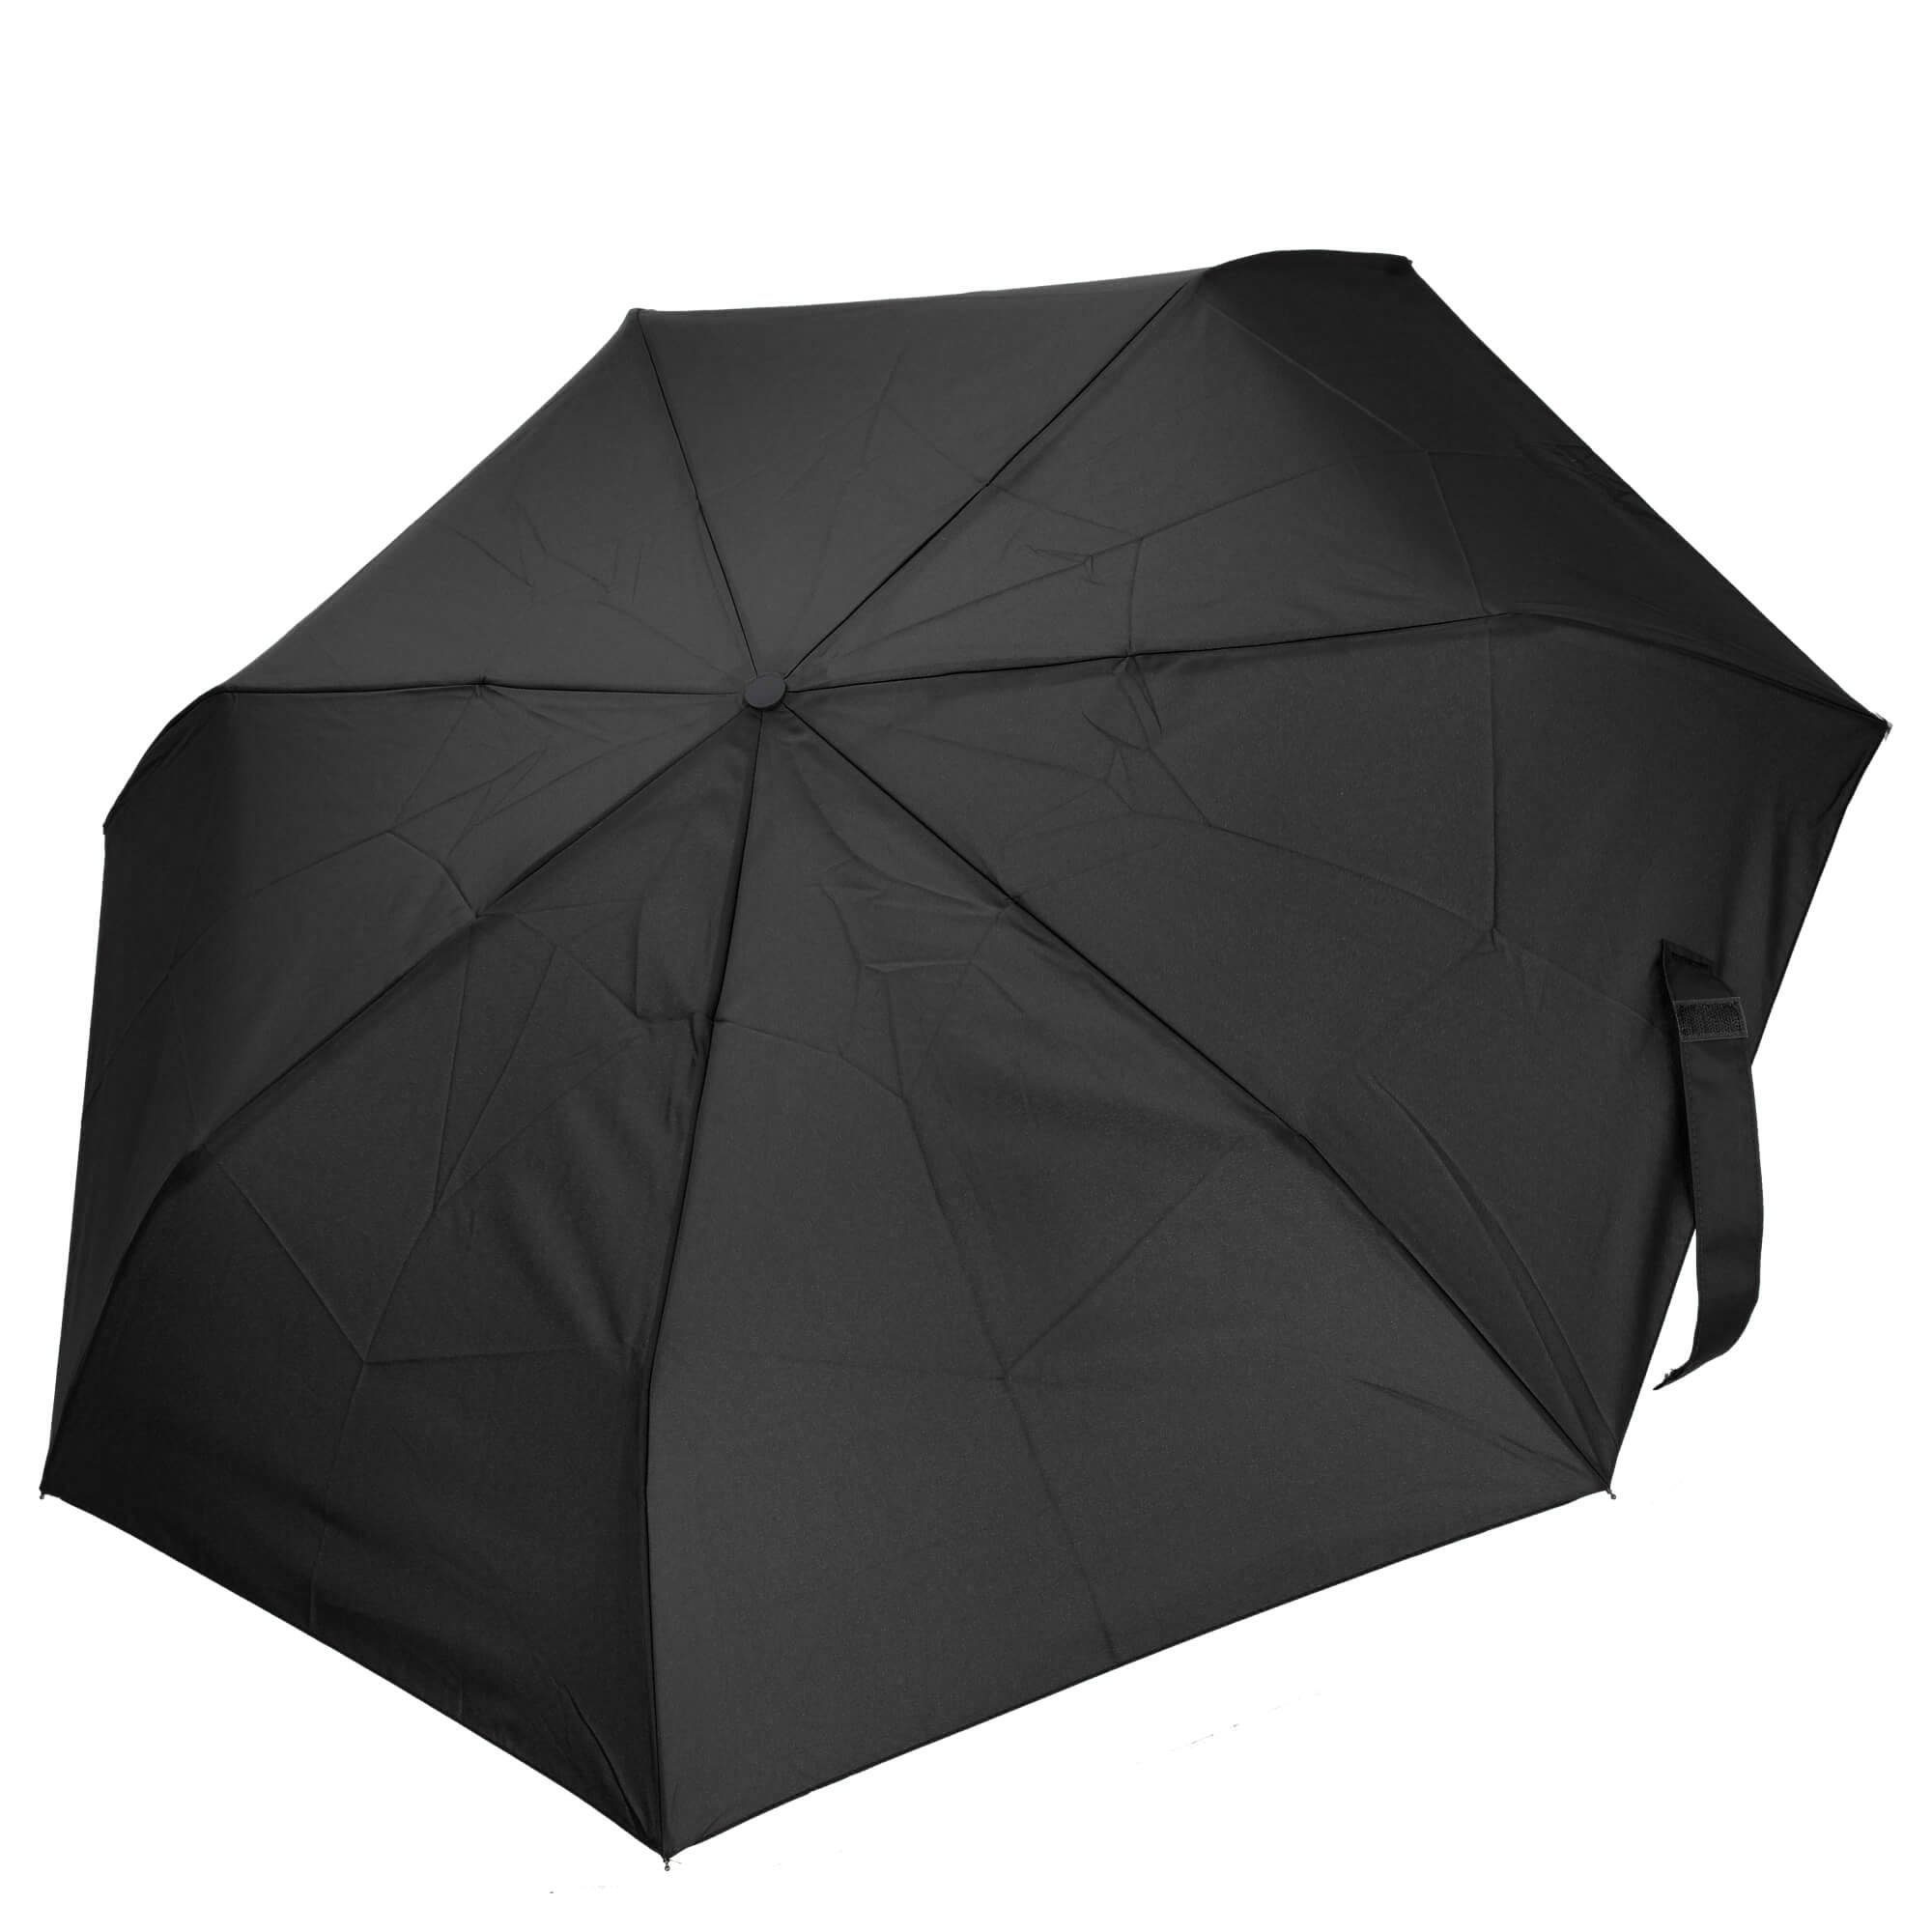 THE BRIDGE Taschenregenschirm Ombrelli - Regenschirm 96 cm black